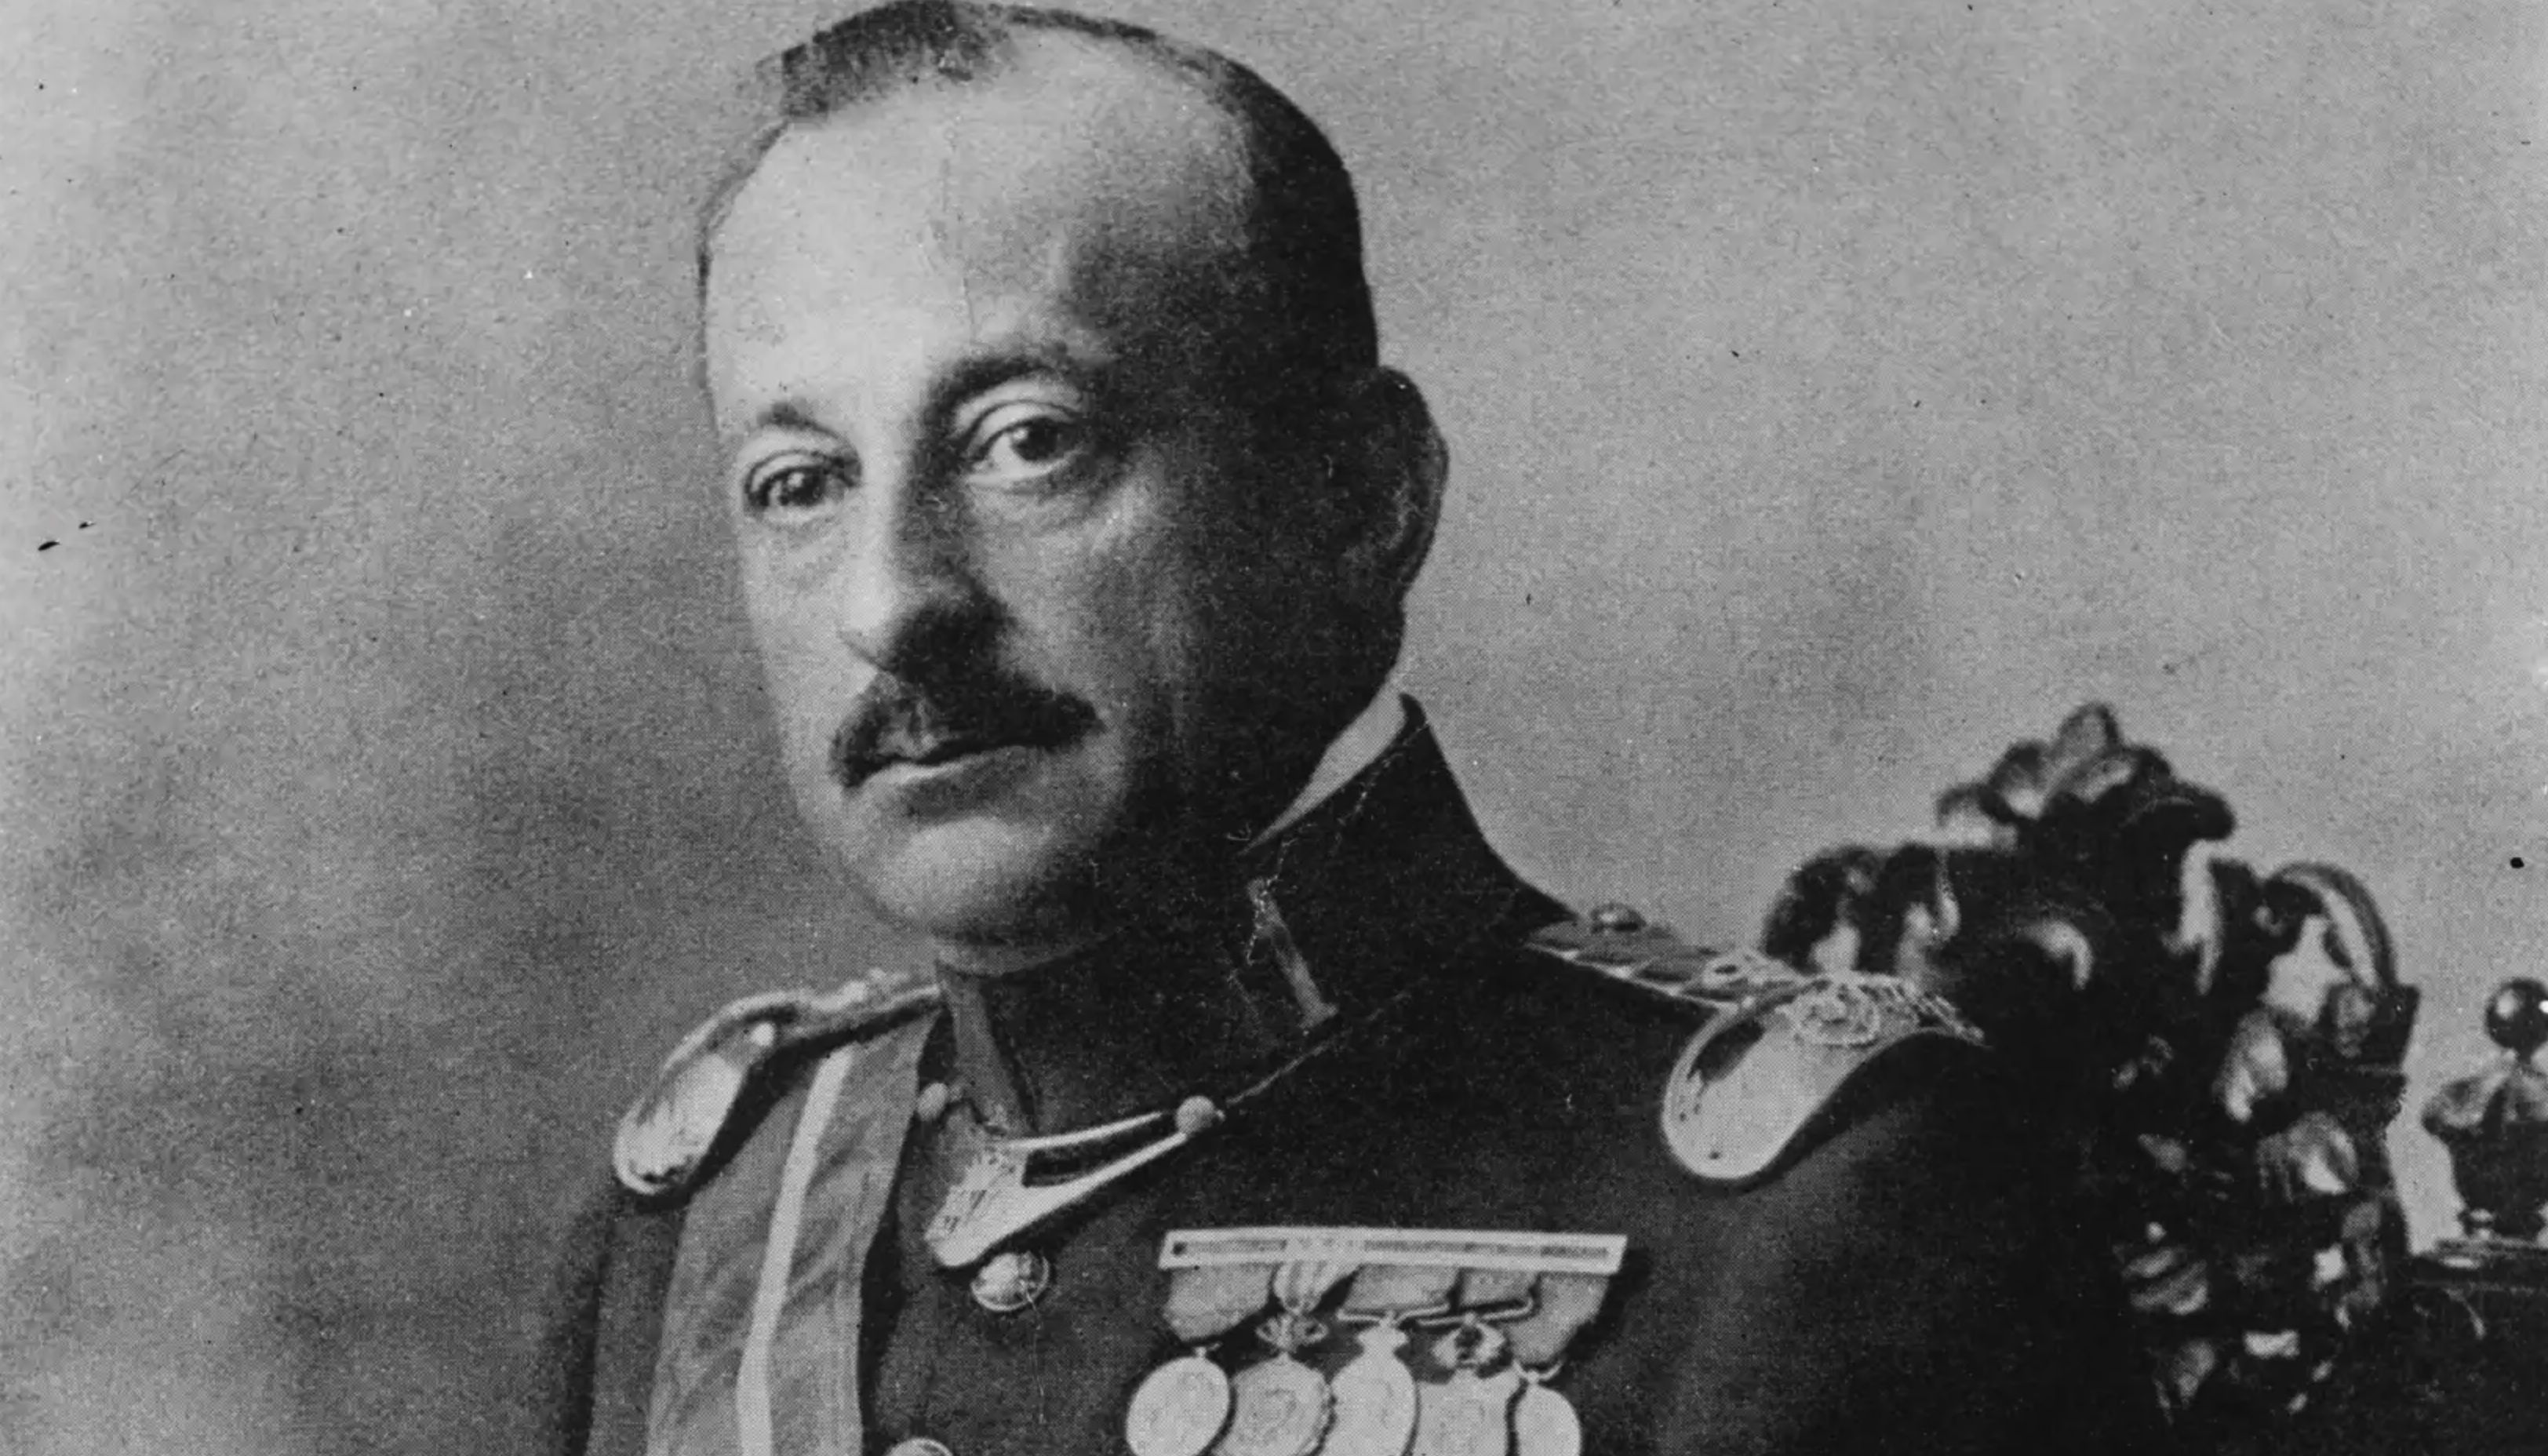 Retrato del general Miguel Primo de Rivera y Orbaneja.